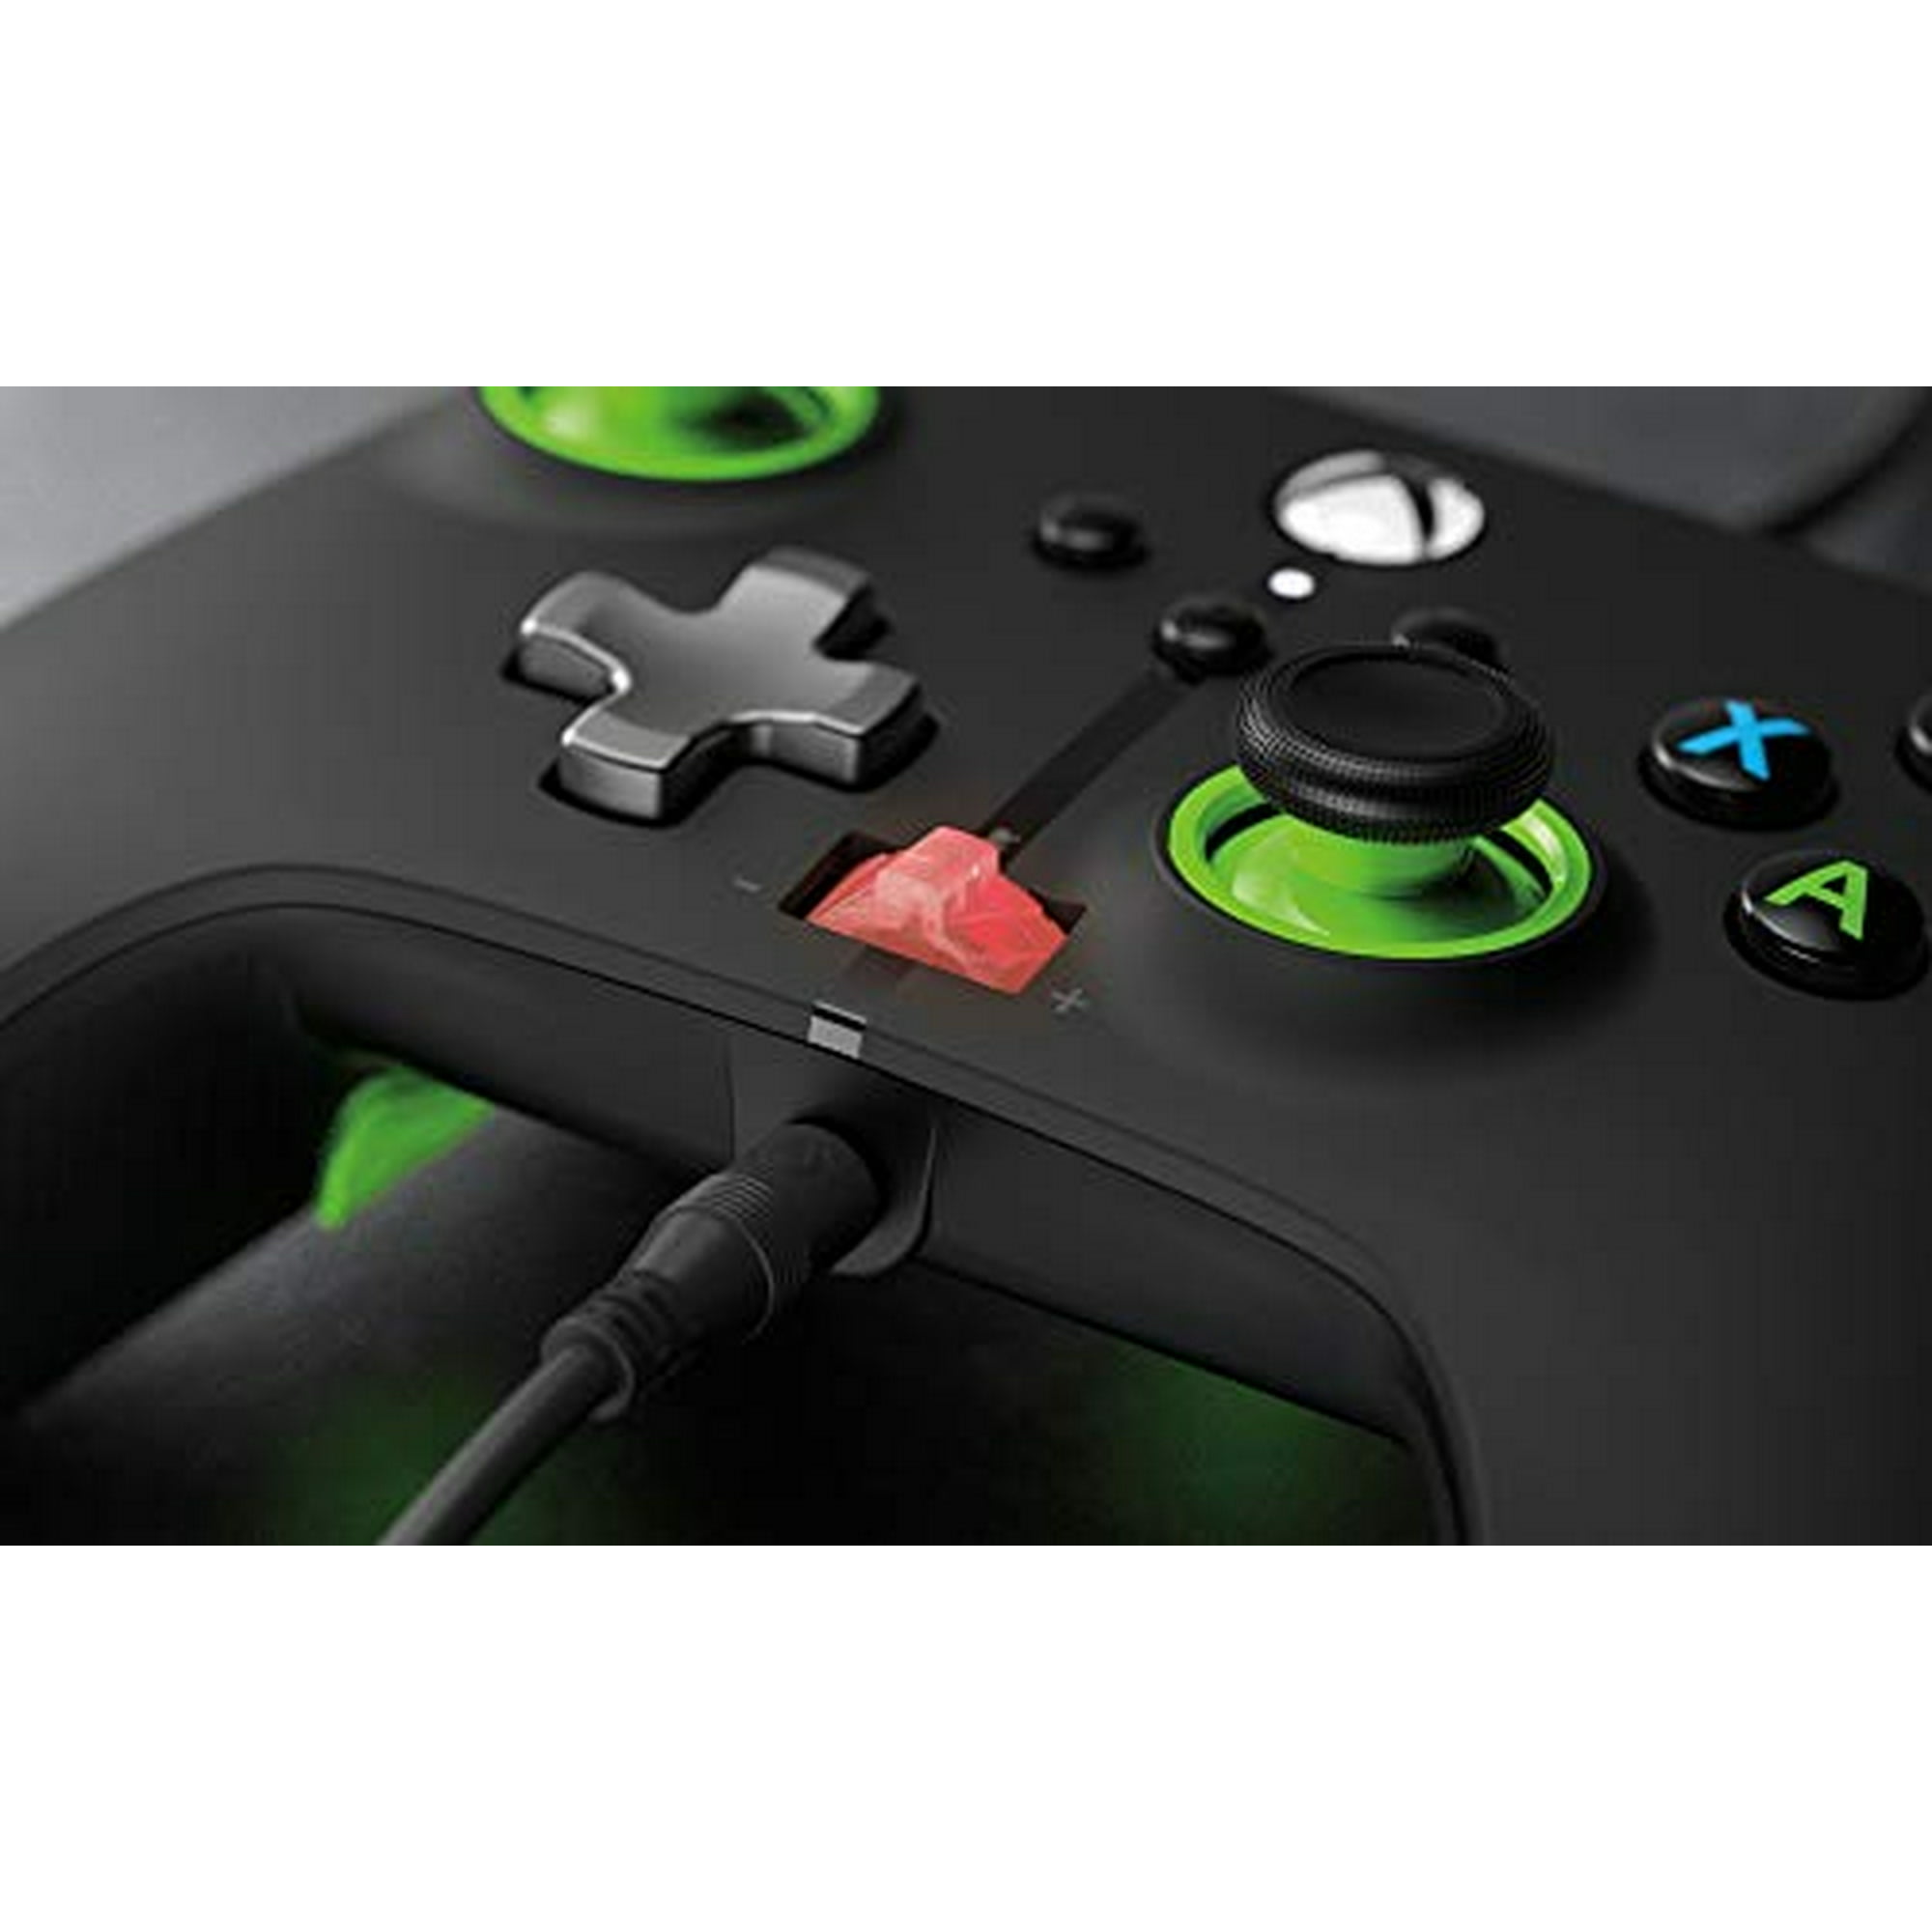 Power A Mando con Cable Negro para Xbox Series X/S